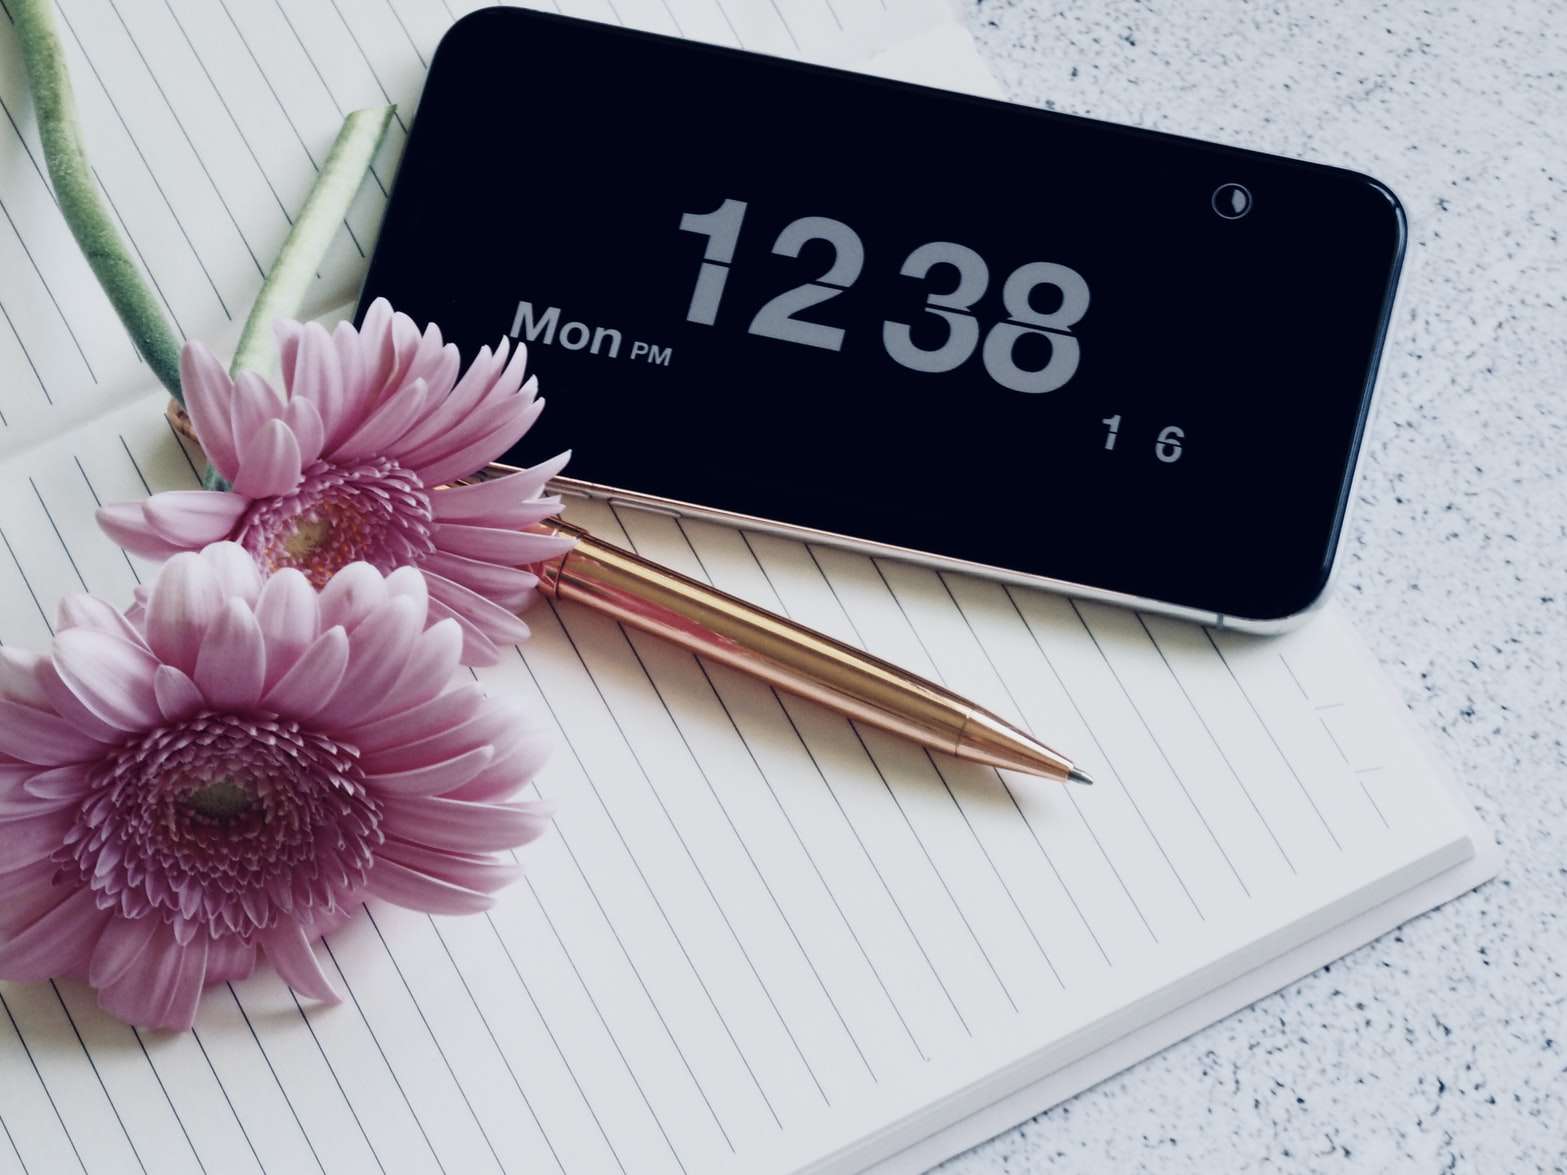 iPhone mostrando as horas enquanto descansa em um notebook com uma caneta